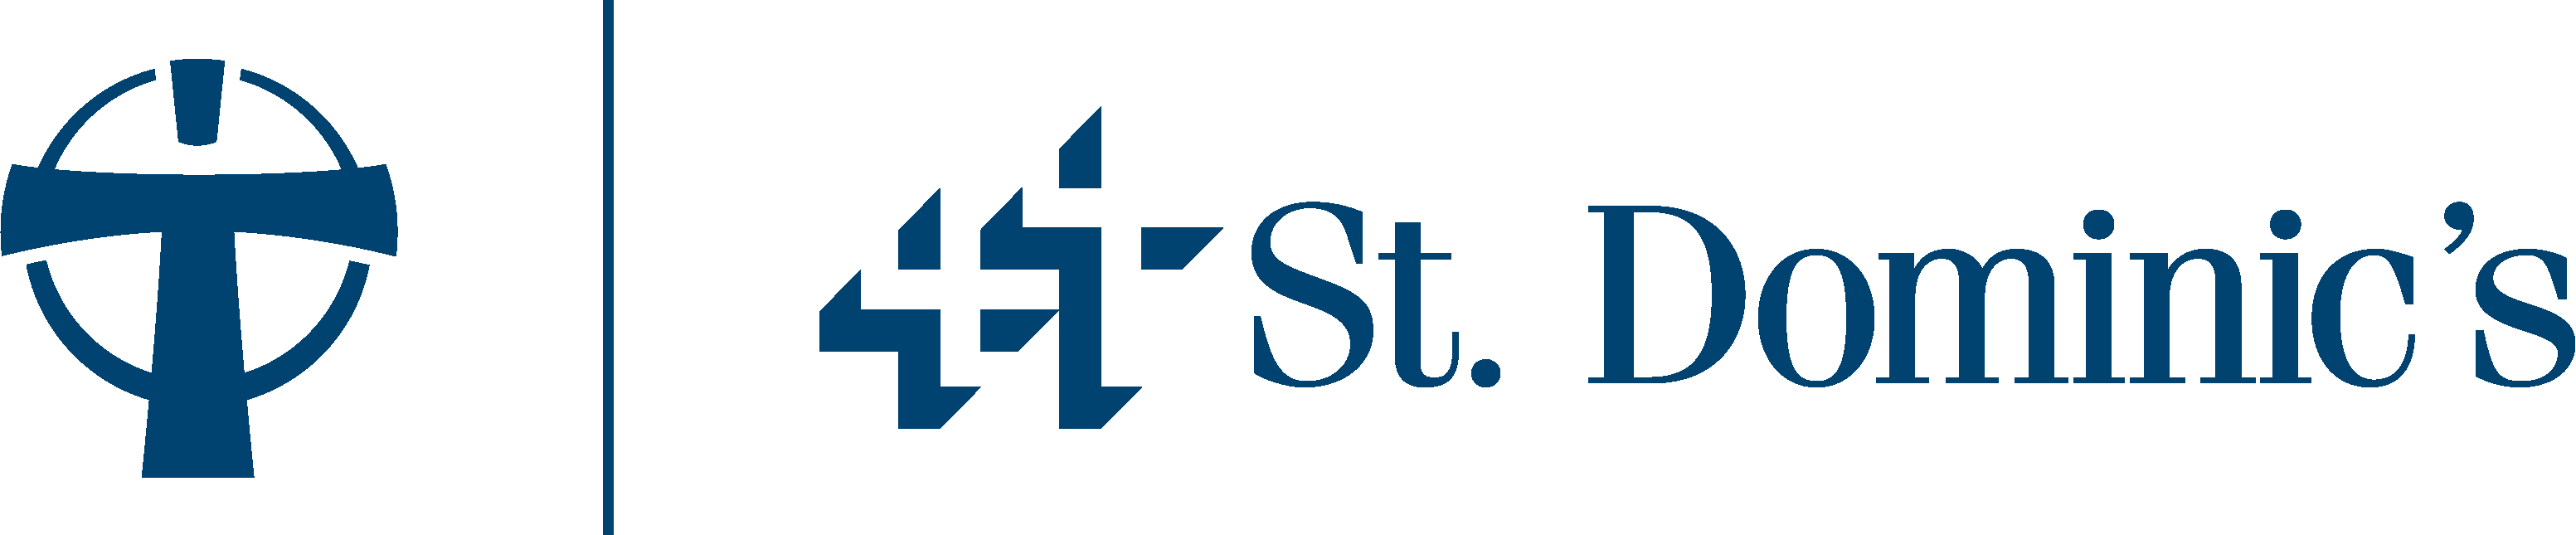 St. Dominic's logo